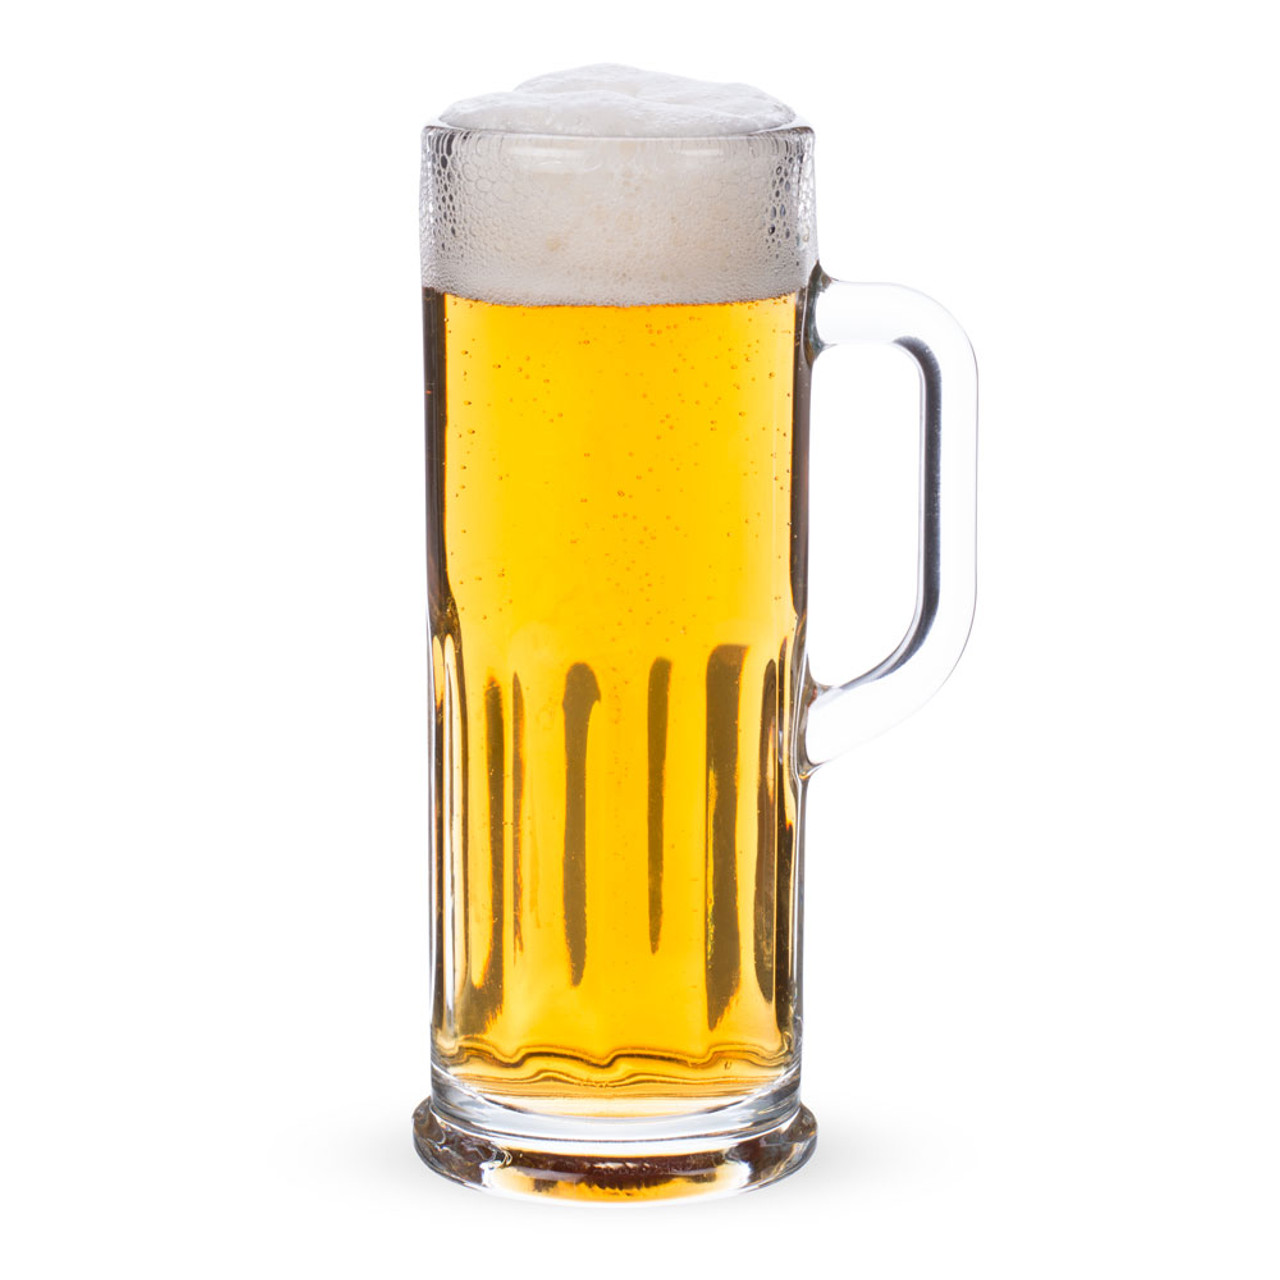 Libbey Frankfurt Paneled Beer Mug Tasting Glass - 4 oz